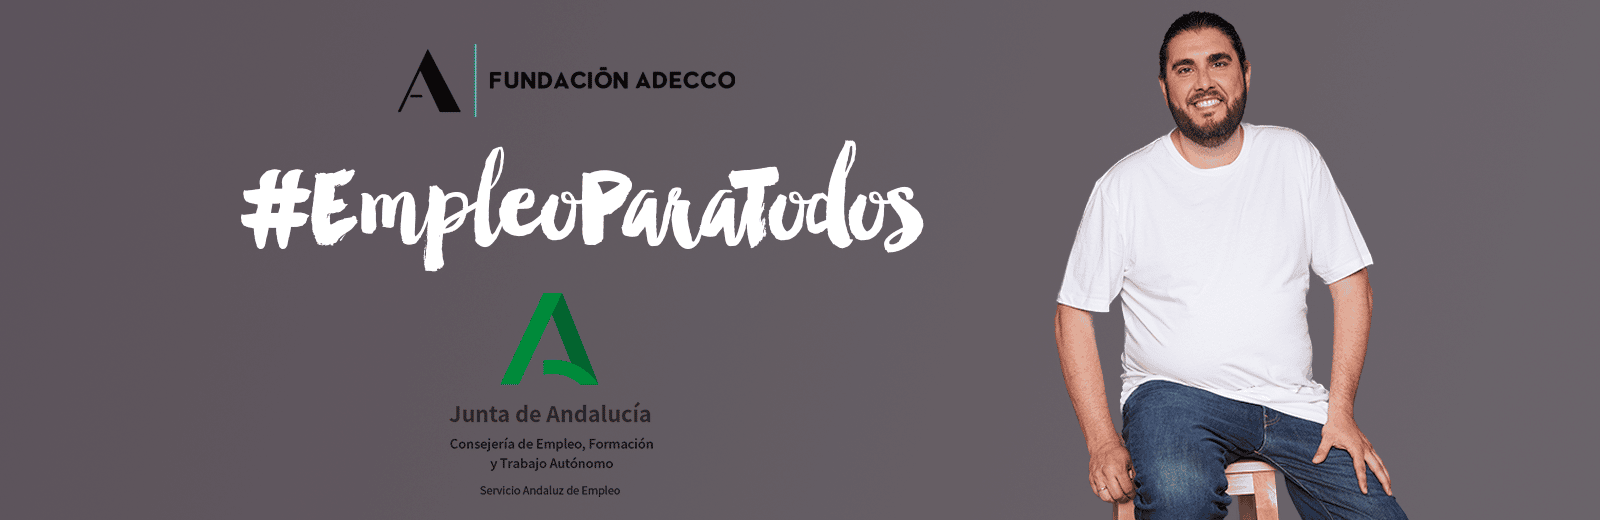 programa de empleo para personas en riesgo de exclusión social Fundación Adecco. Financiado por la Junta de Andalucía.